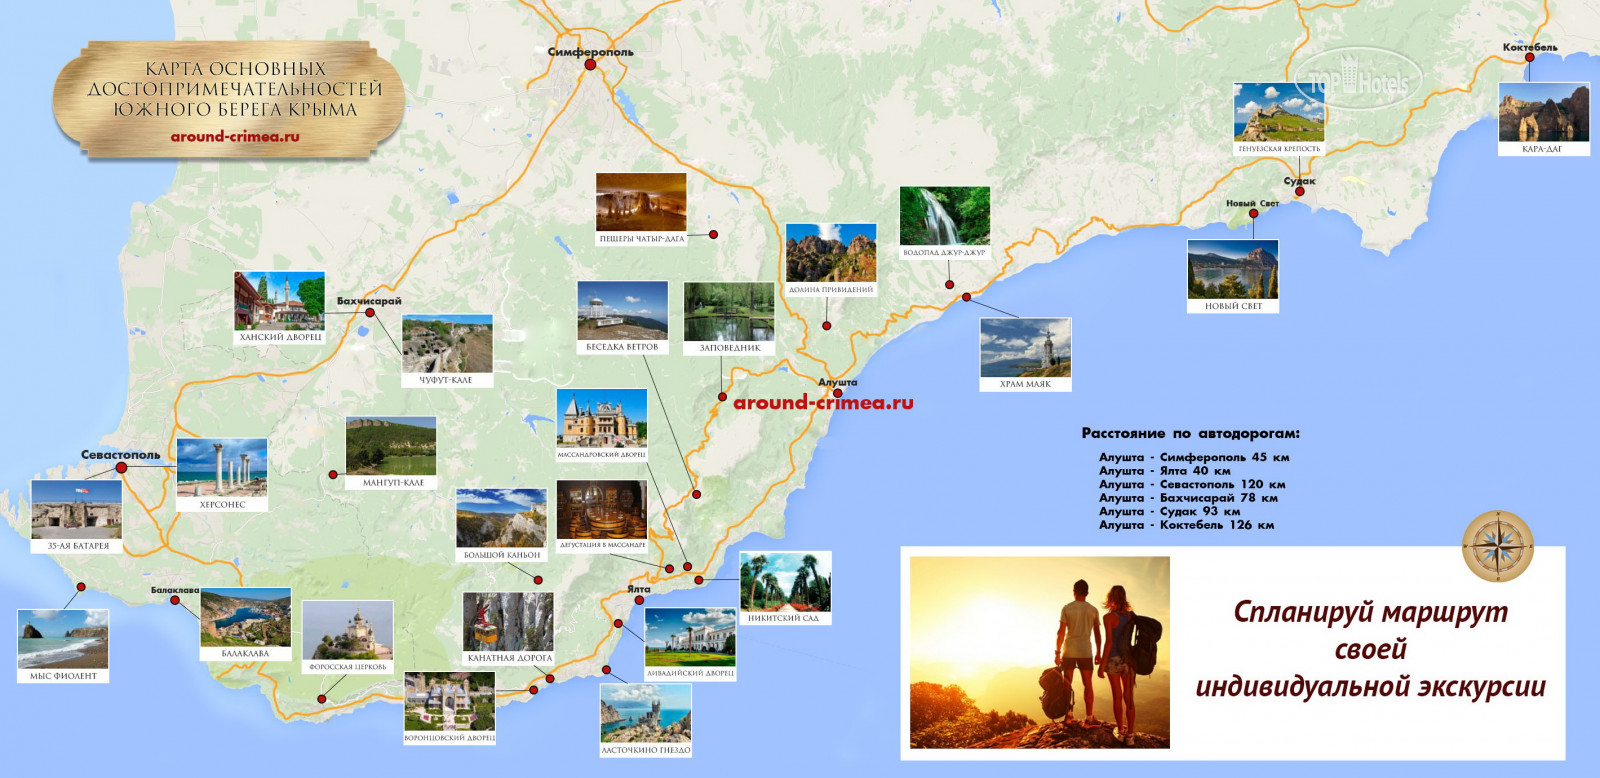 Побережье Крыма с достопримечательностями на карте